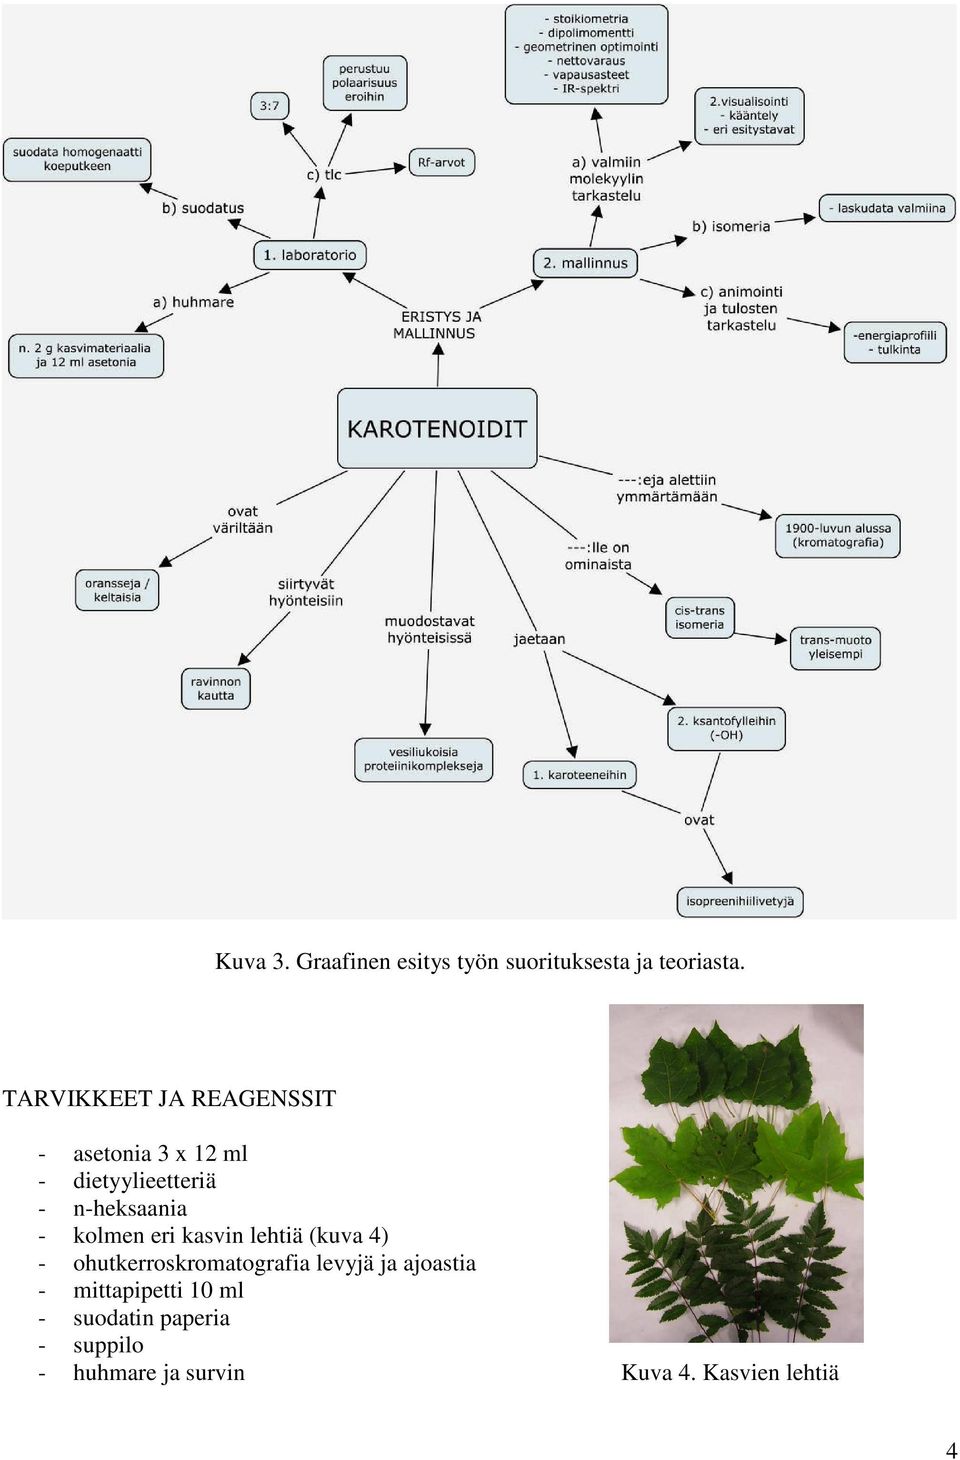 n-heksaania - kolmen eri kasvin lehtiä (kuva 4) - ohutkerroskromatografia